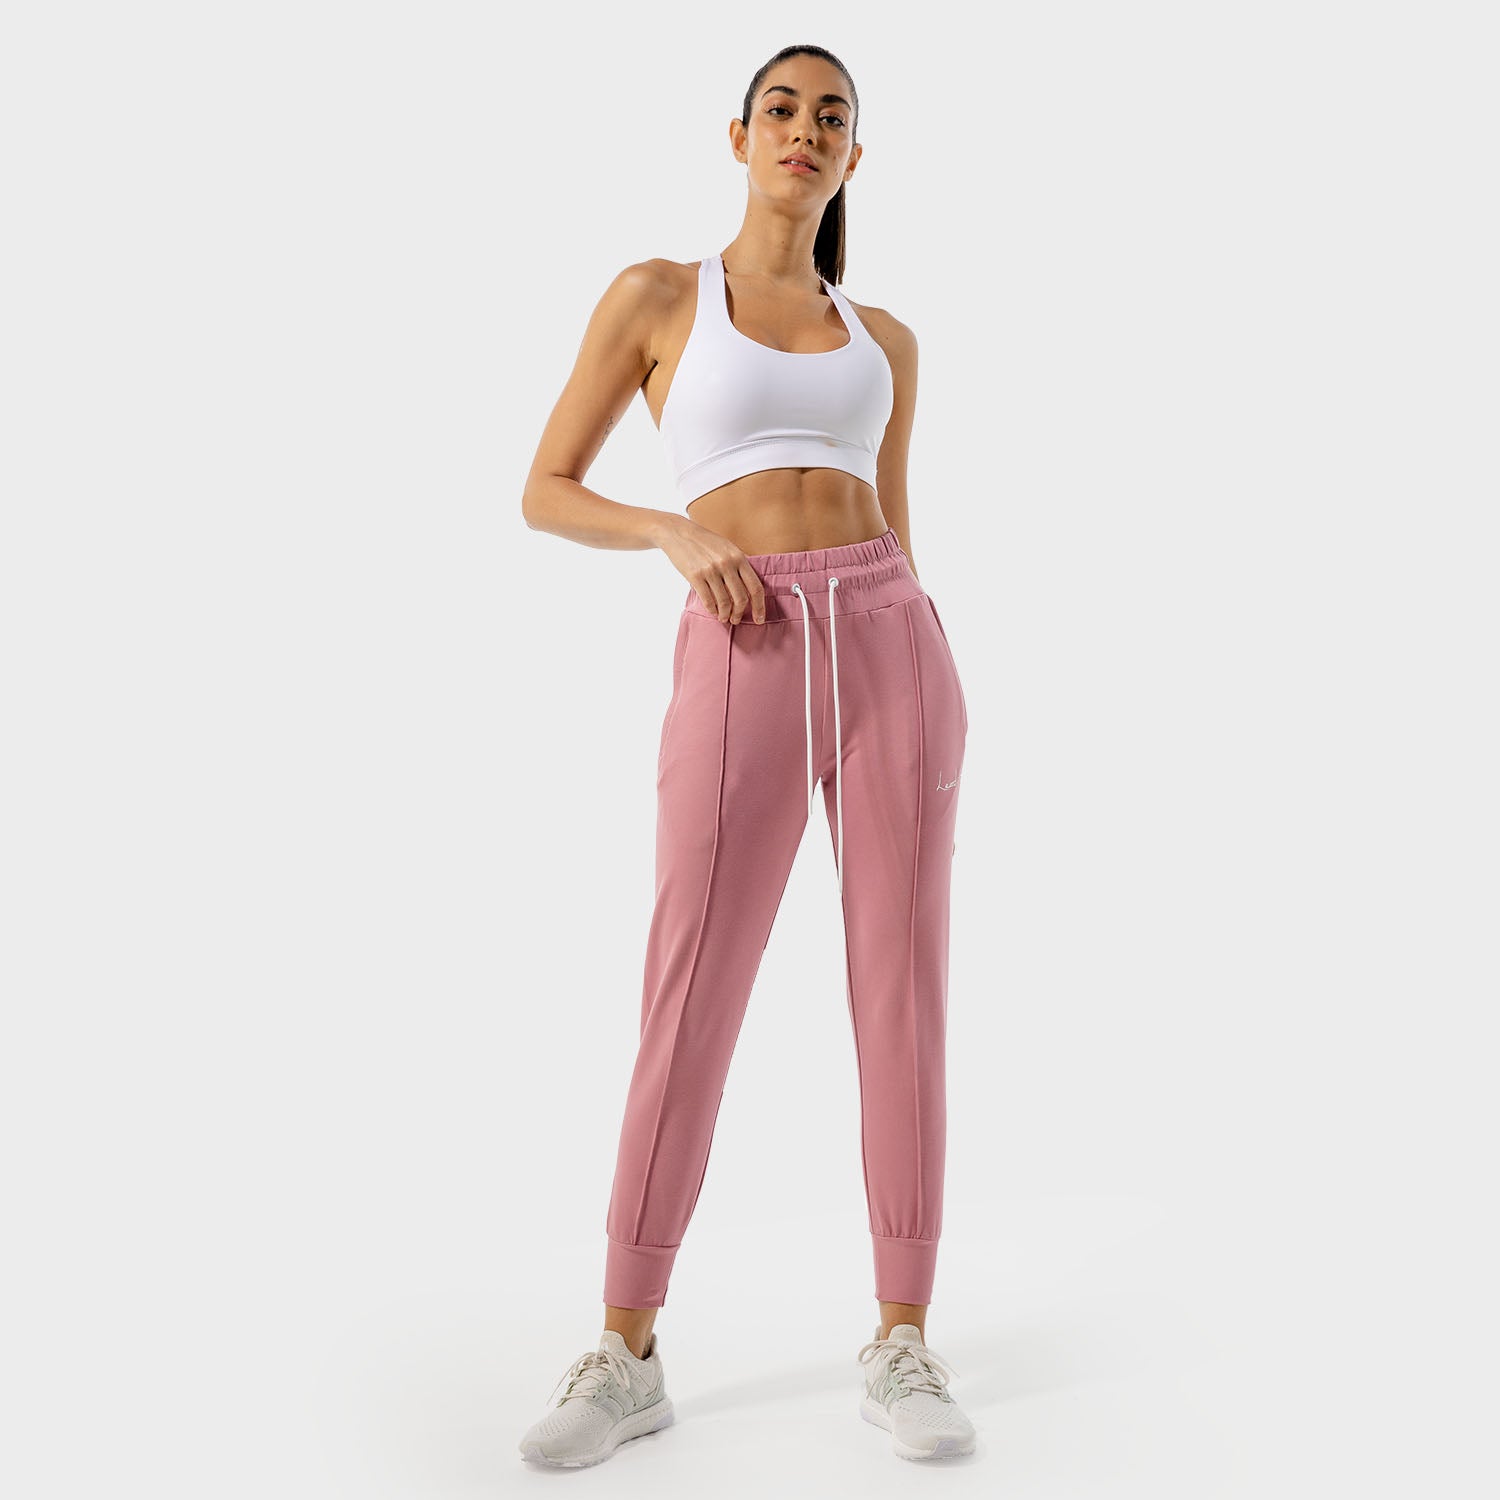 squatwolf-gym-pants-for-women-vibe-joggers-mauve-workout-clothes